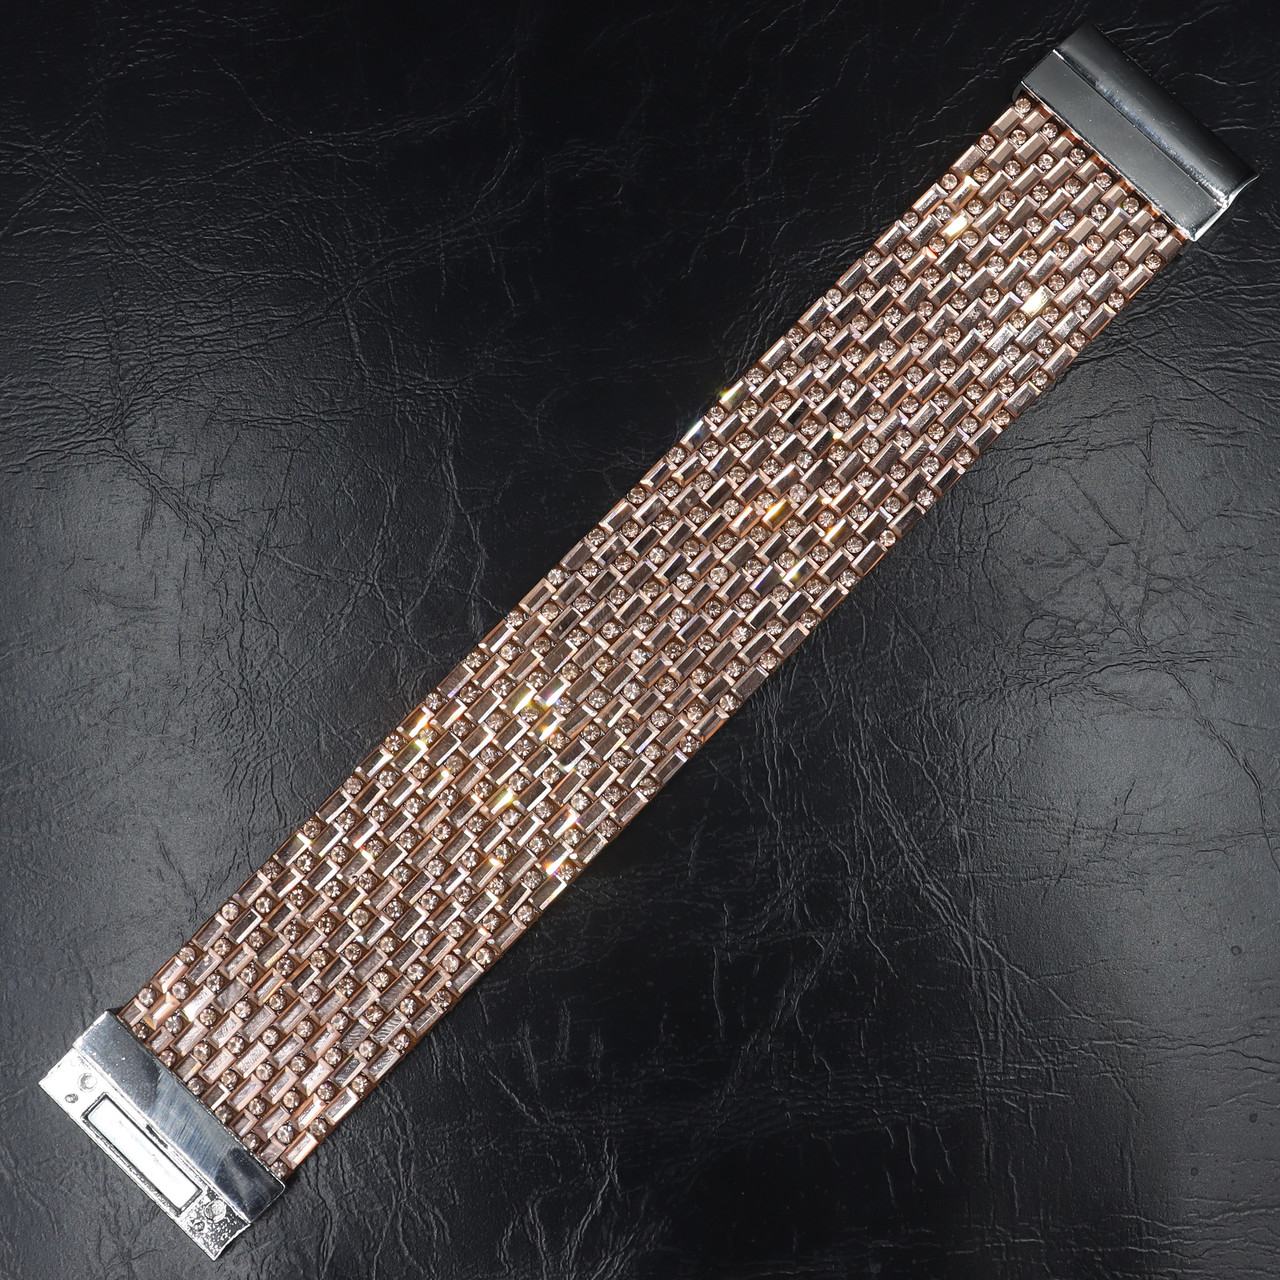 Женский широкий браслет застёжка-магнит серебристого цвета с бежевыми кристаллами ширина 3 см длина 20 см